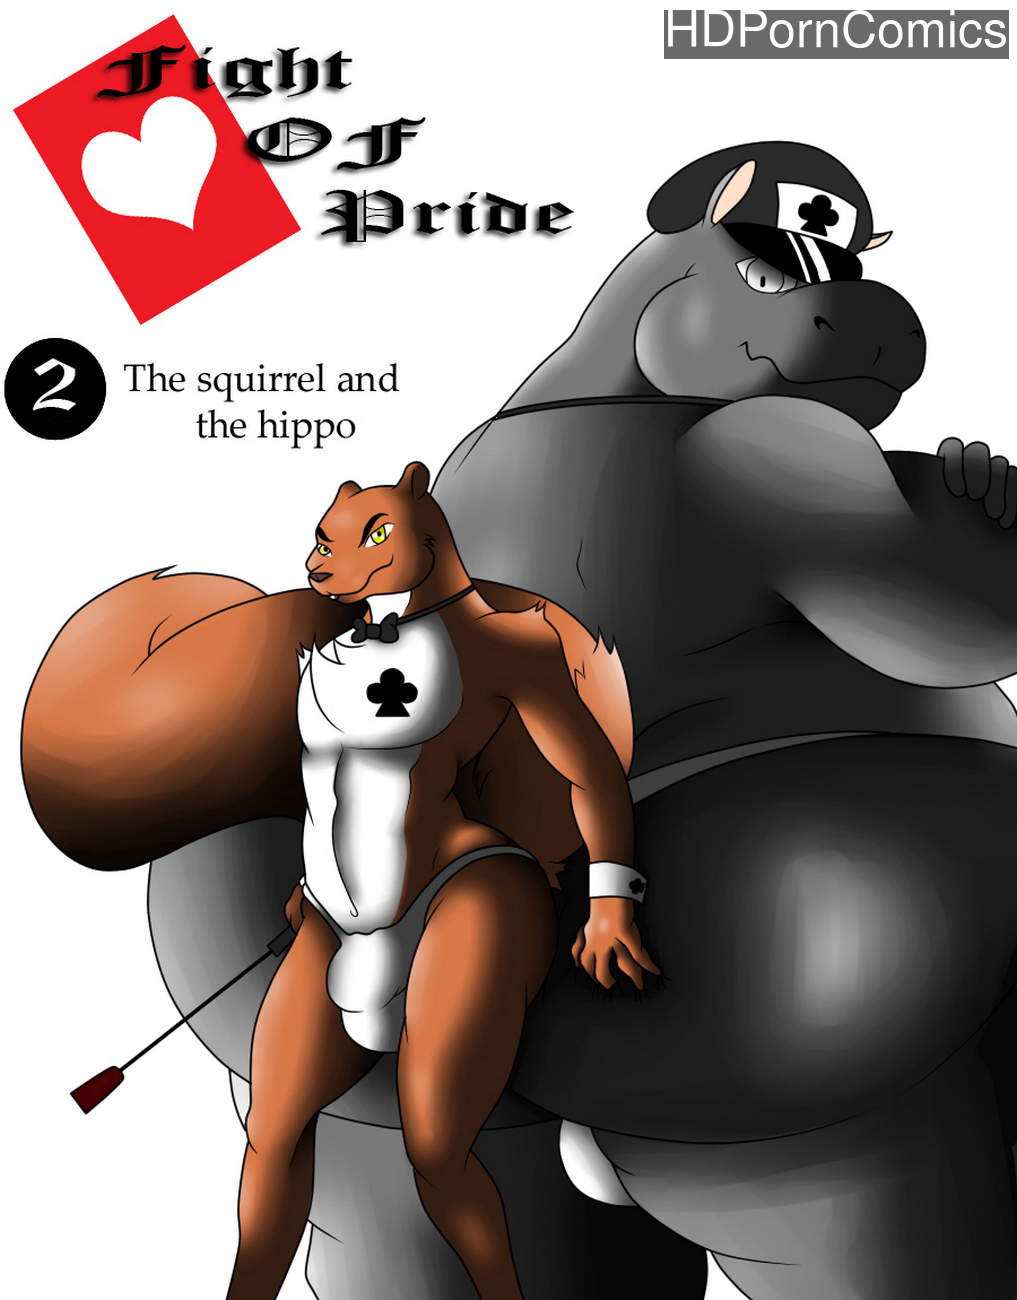 Hippo Porn Comics - Fight Of Pride 2 - The Squirrel And The Hippo comic porn - HD Porn Comics